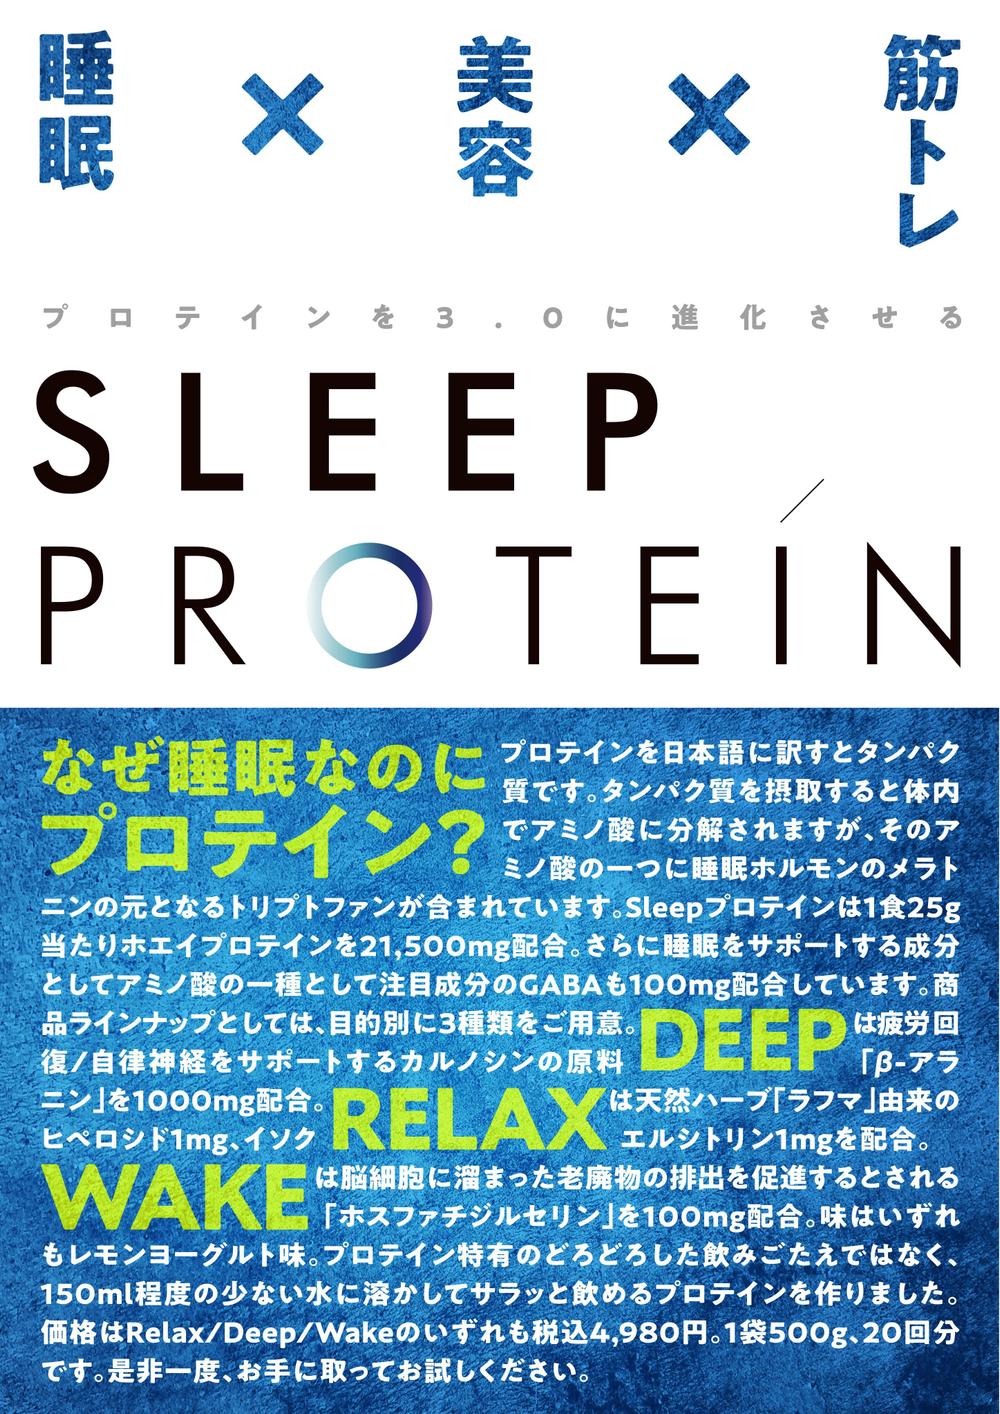 SleepProtein.jpg